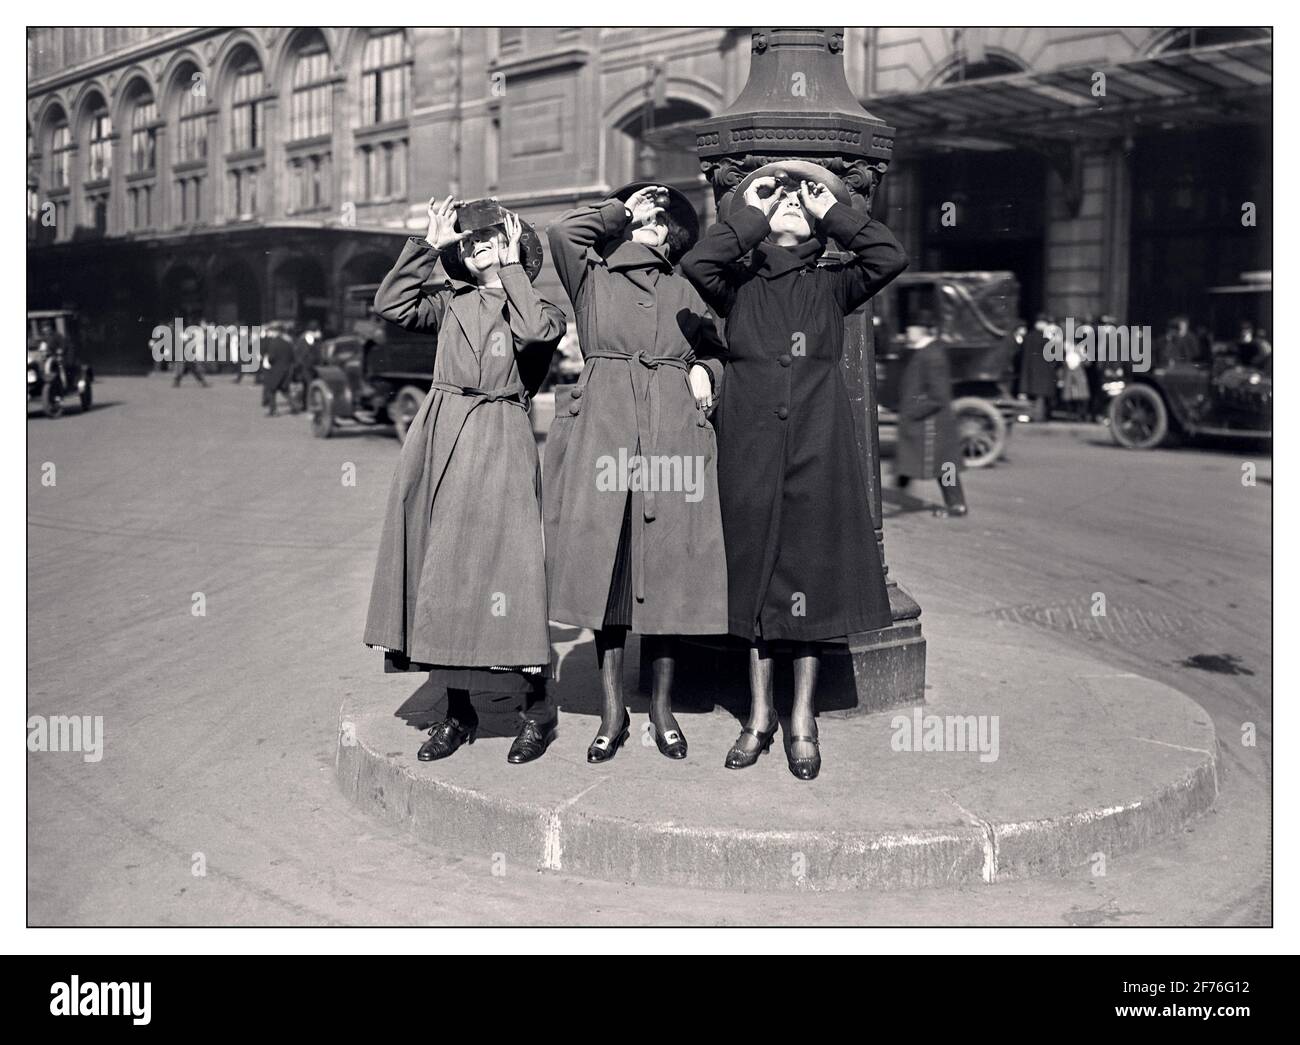 SONNENFINSTERNIS JAHRGANG der 20er Jahre drei Pariser Frauen beobachten die Sonnenfinsternis vom 8. April 1921 auf dem Cour du Havre, neben dem gare Saint-Lazare. Cour du Havre, gare Saint-Lazare, Paris, Frankreich. Datum: 8. April 1921 Stockfoto